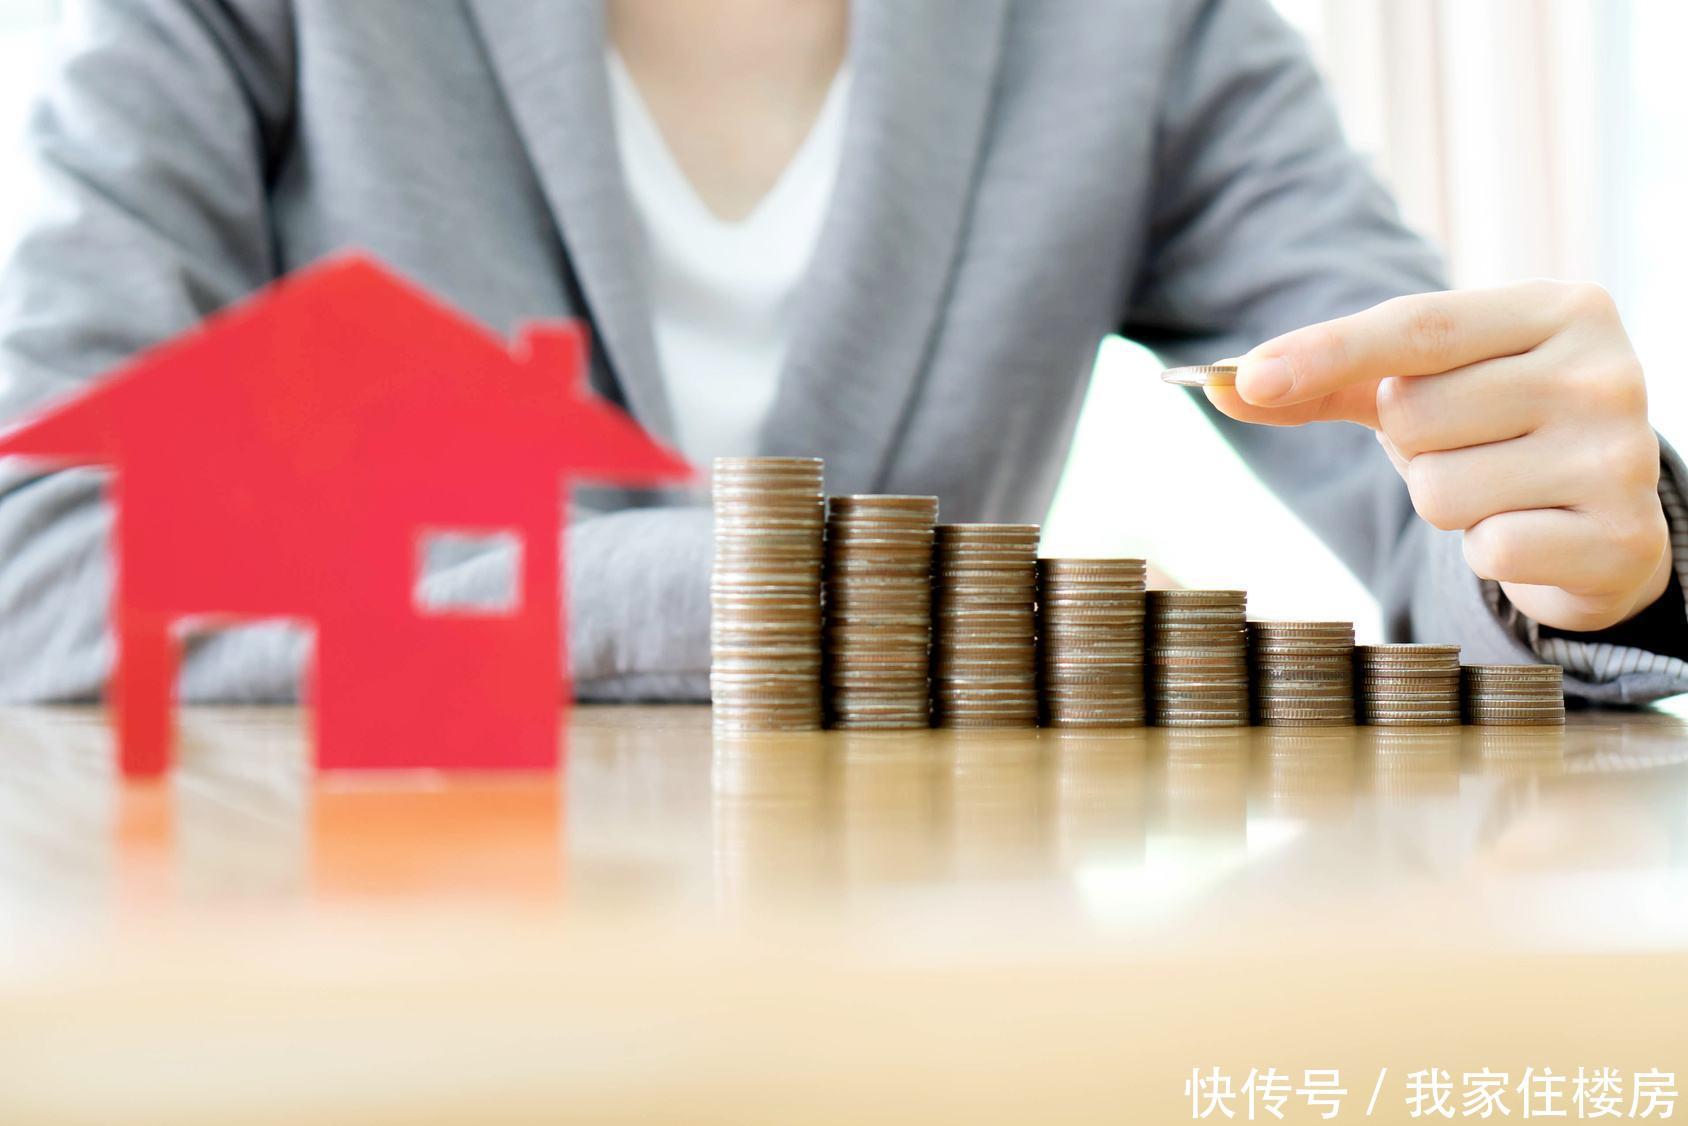 杭州某银行房屋按揭可贷到80岁,购房者大多借